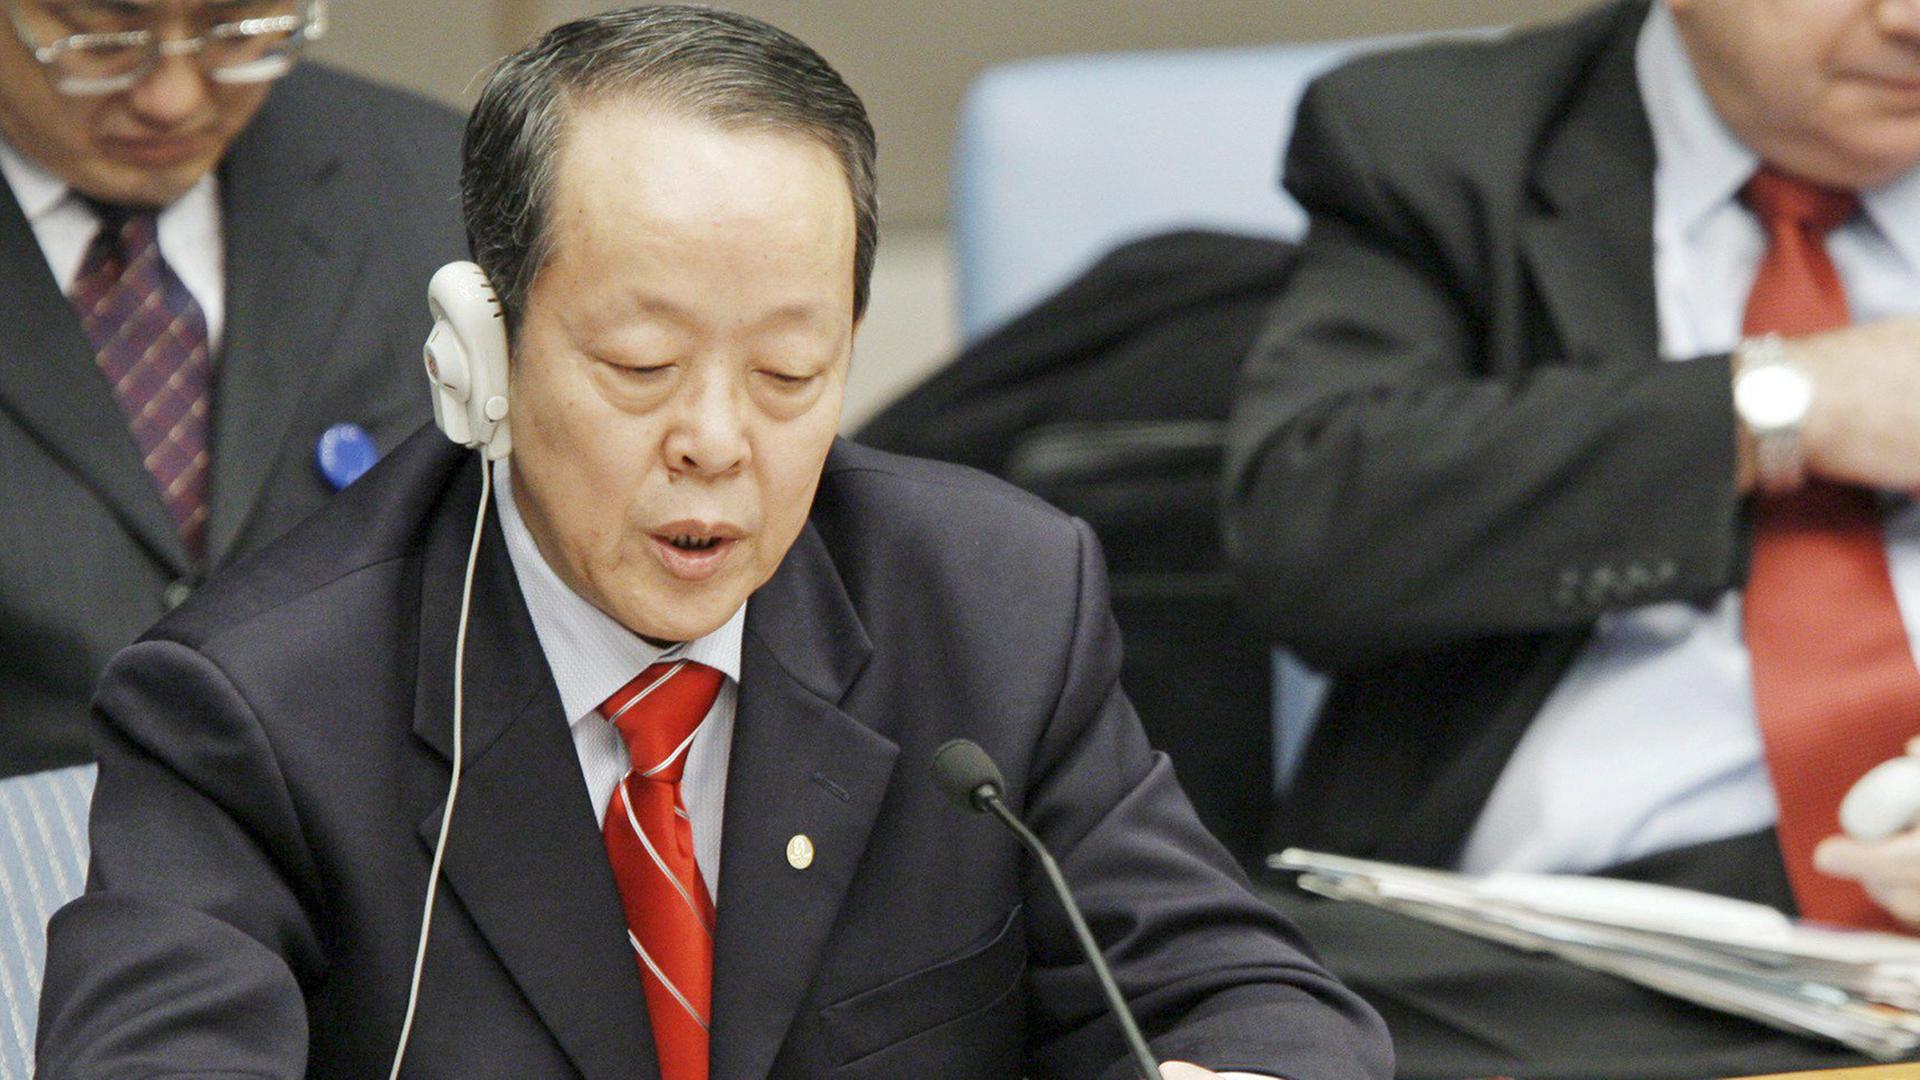 Der damalige UN-Botschafter für China, Guangya Wang, spricht 2008 anlässlich der Kosovo-Deklaration.